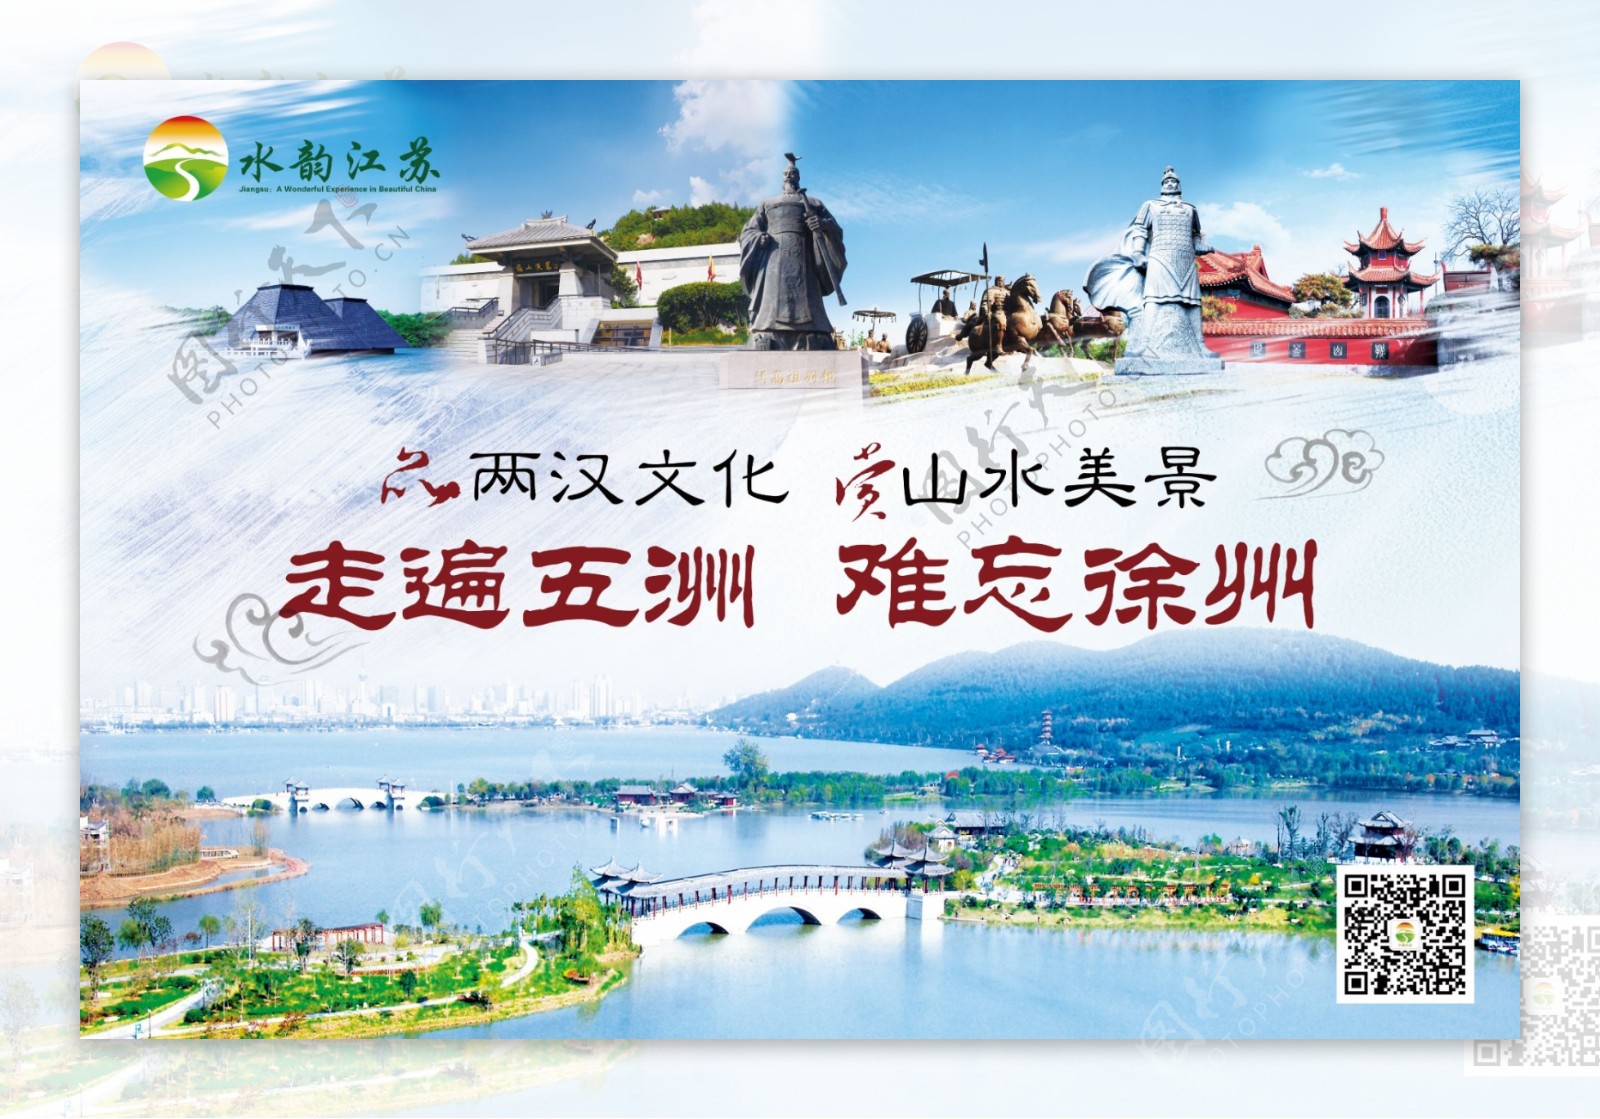 徐州旅游宣传图